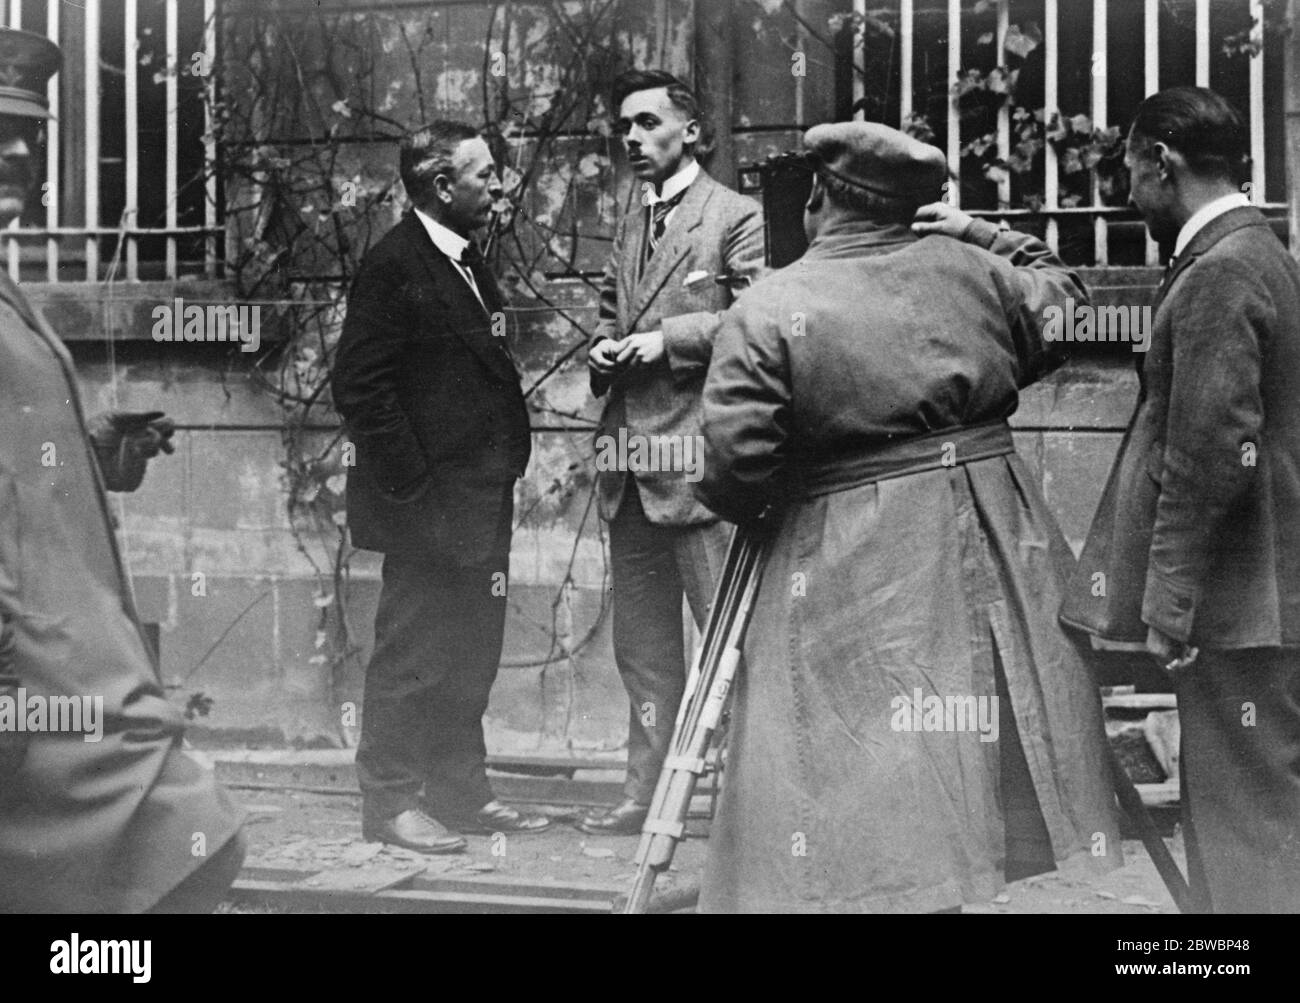 Der Beginn der rheinischen Republikanischen Bewegung. Herr Deckers (links) und Herr Guthardt, die separatistischen Führer der Republikbewegung, werden gefilmt. 25. Oktober 1923 Stockfoto